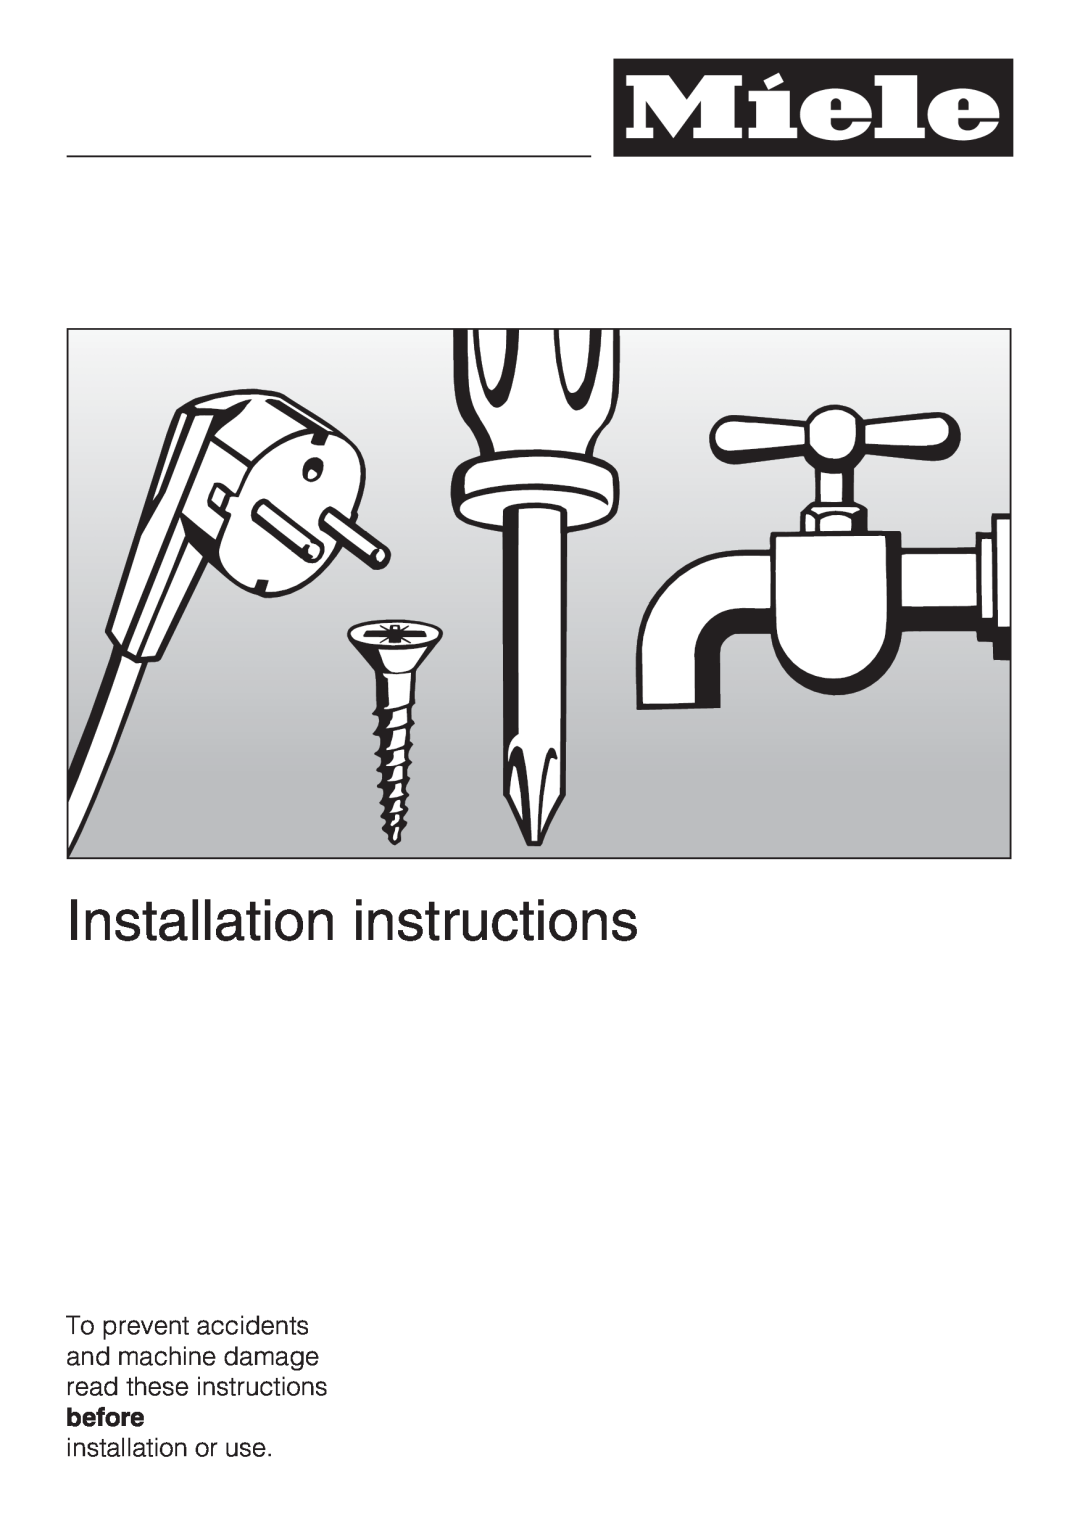 Miele K1901SF, K1801SF, K1911SF, K1811SF installation instructions Installation instructions, installation or use 